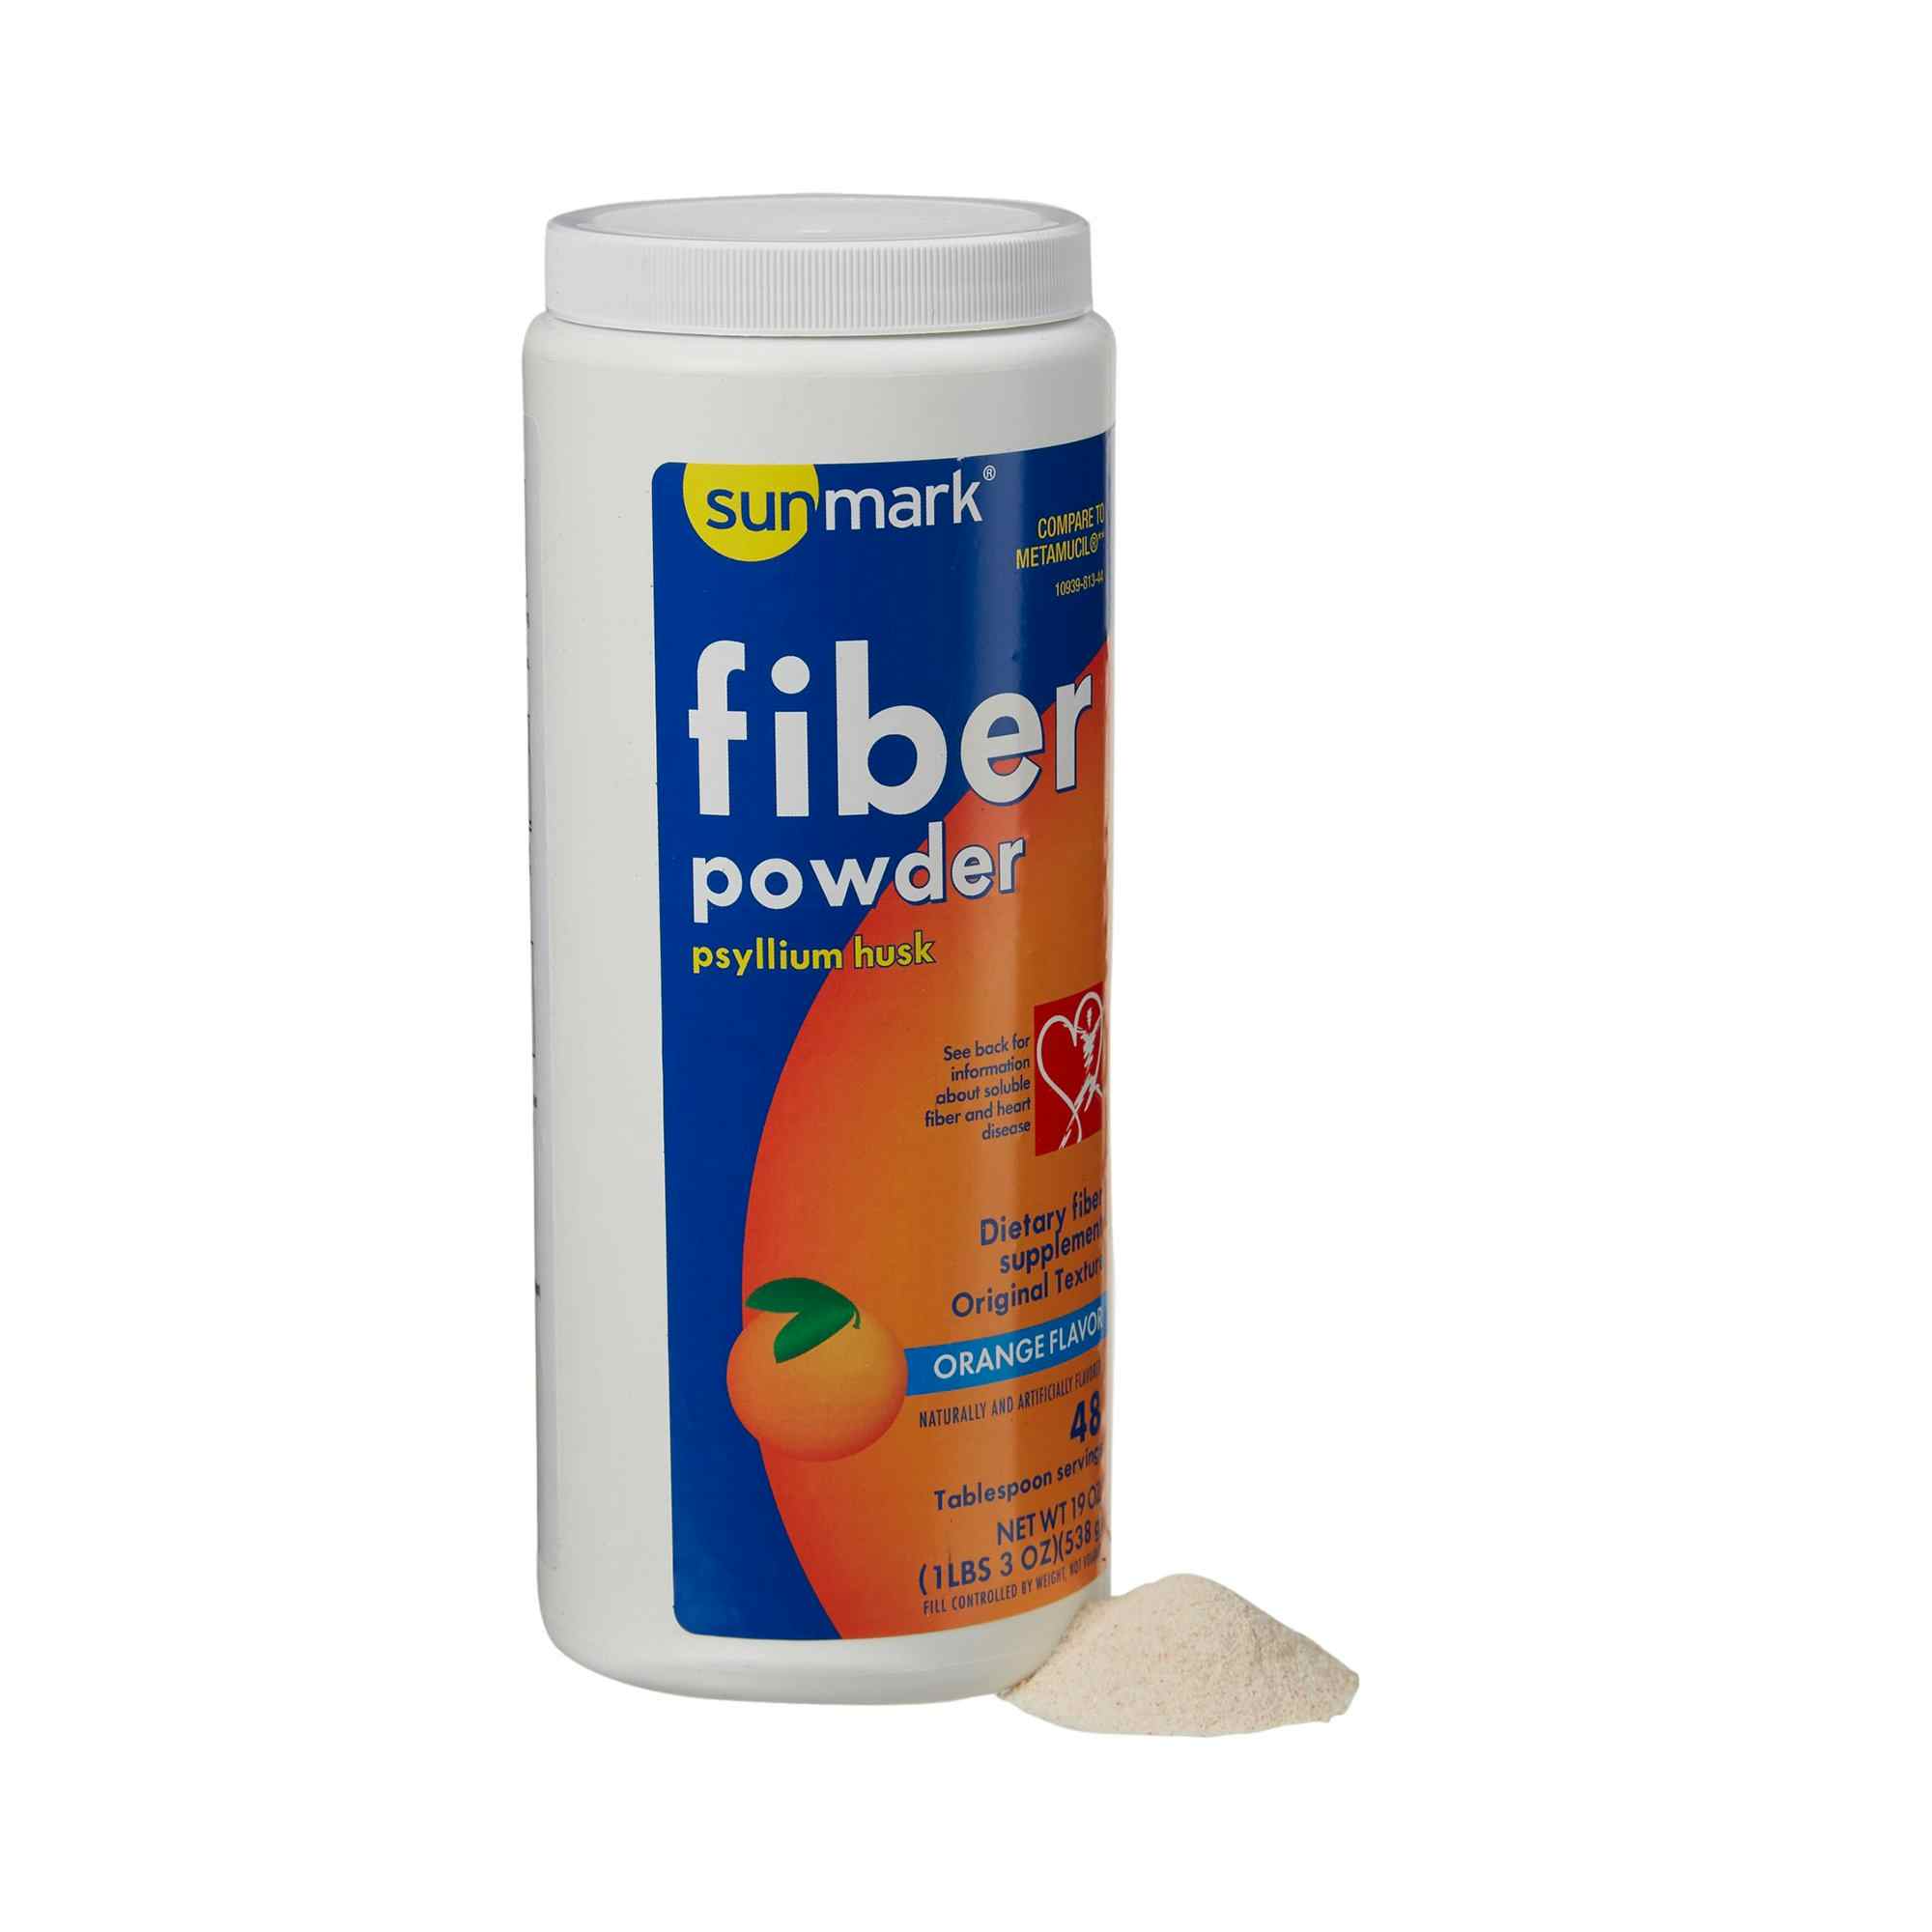 sunmark Fiber Powder Smooth Texture Psyllium Husk Powder, Orange Flavor, 01093981344, 19 oz. - 1 Each